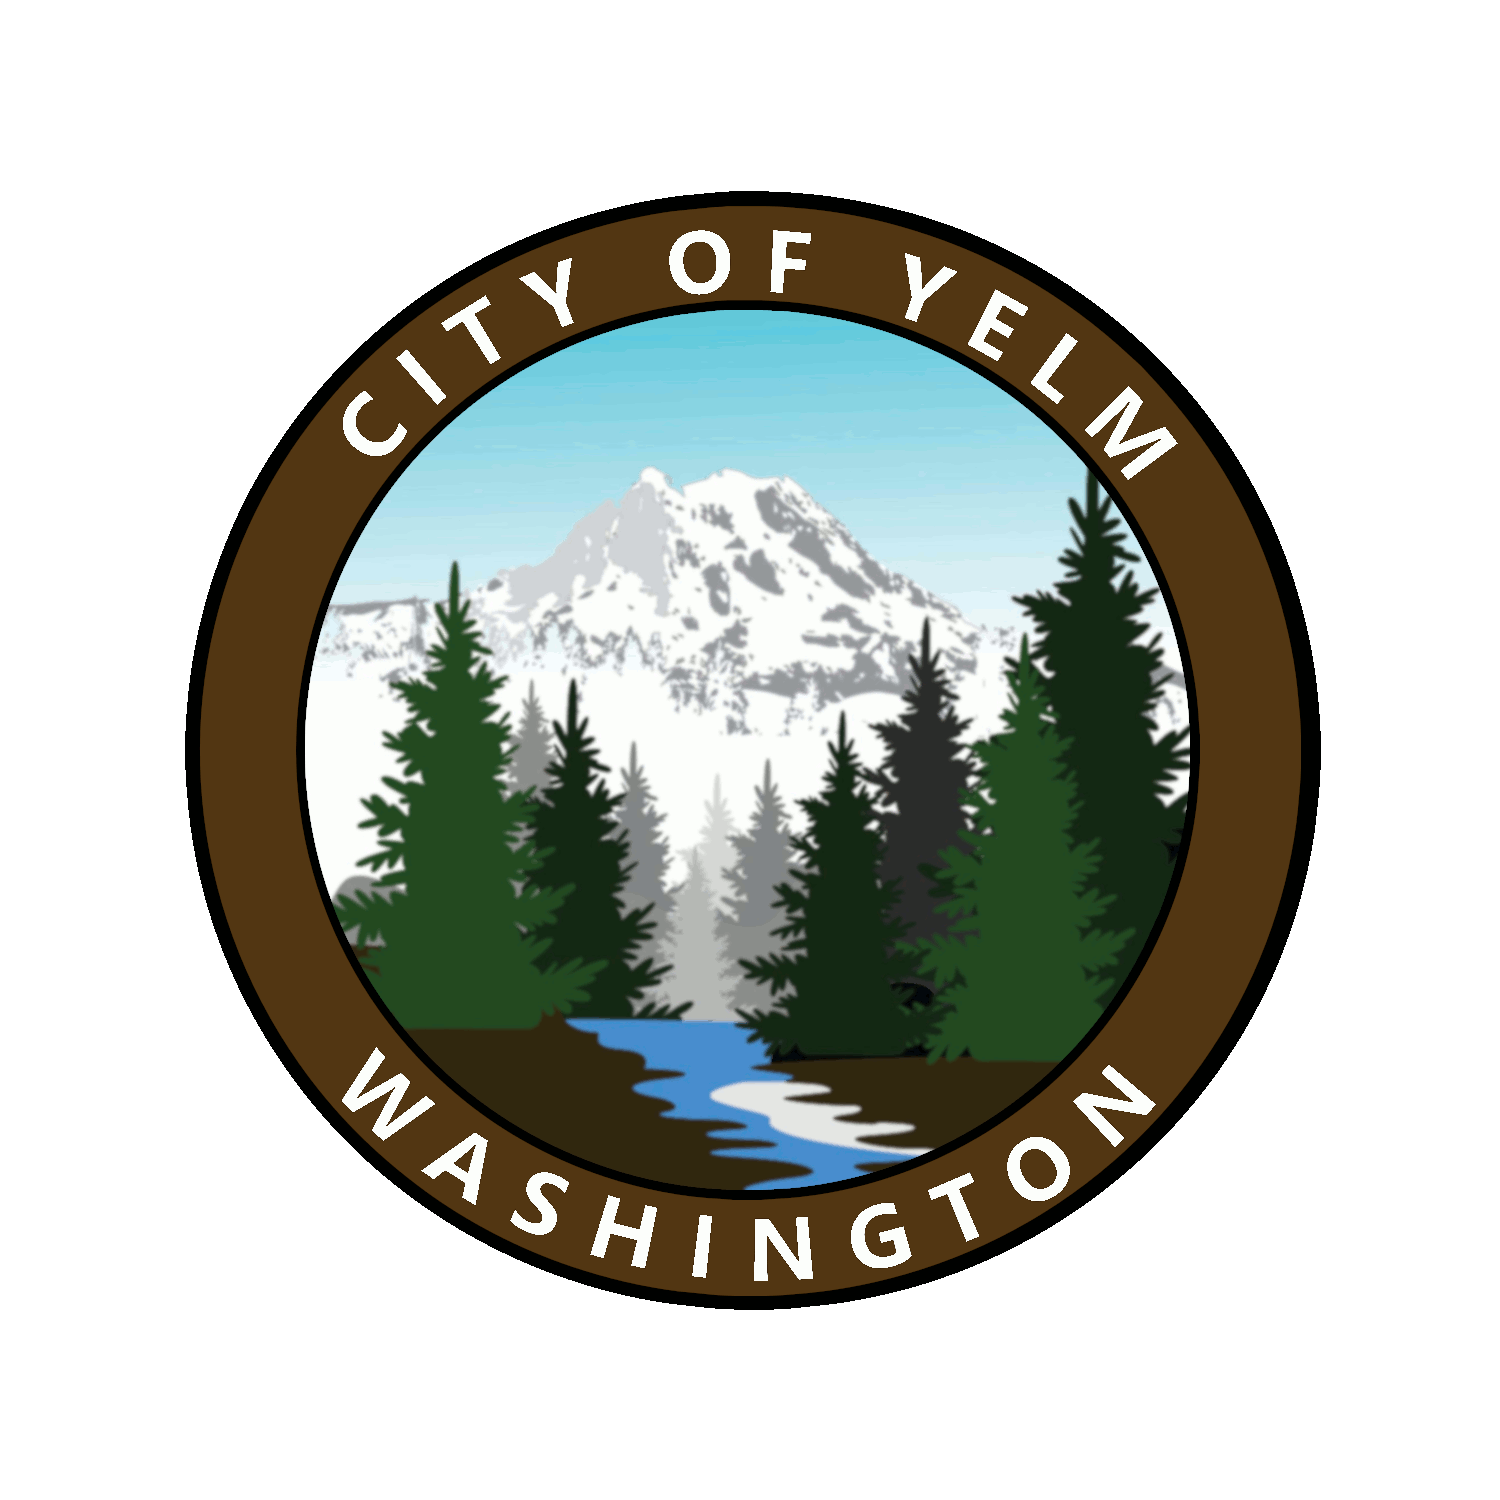 City of Yelm jobs